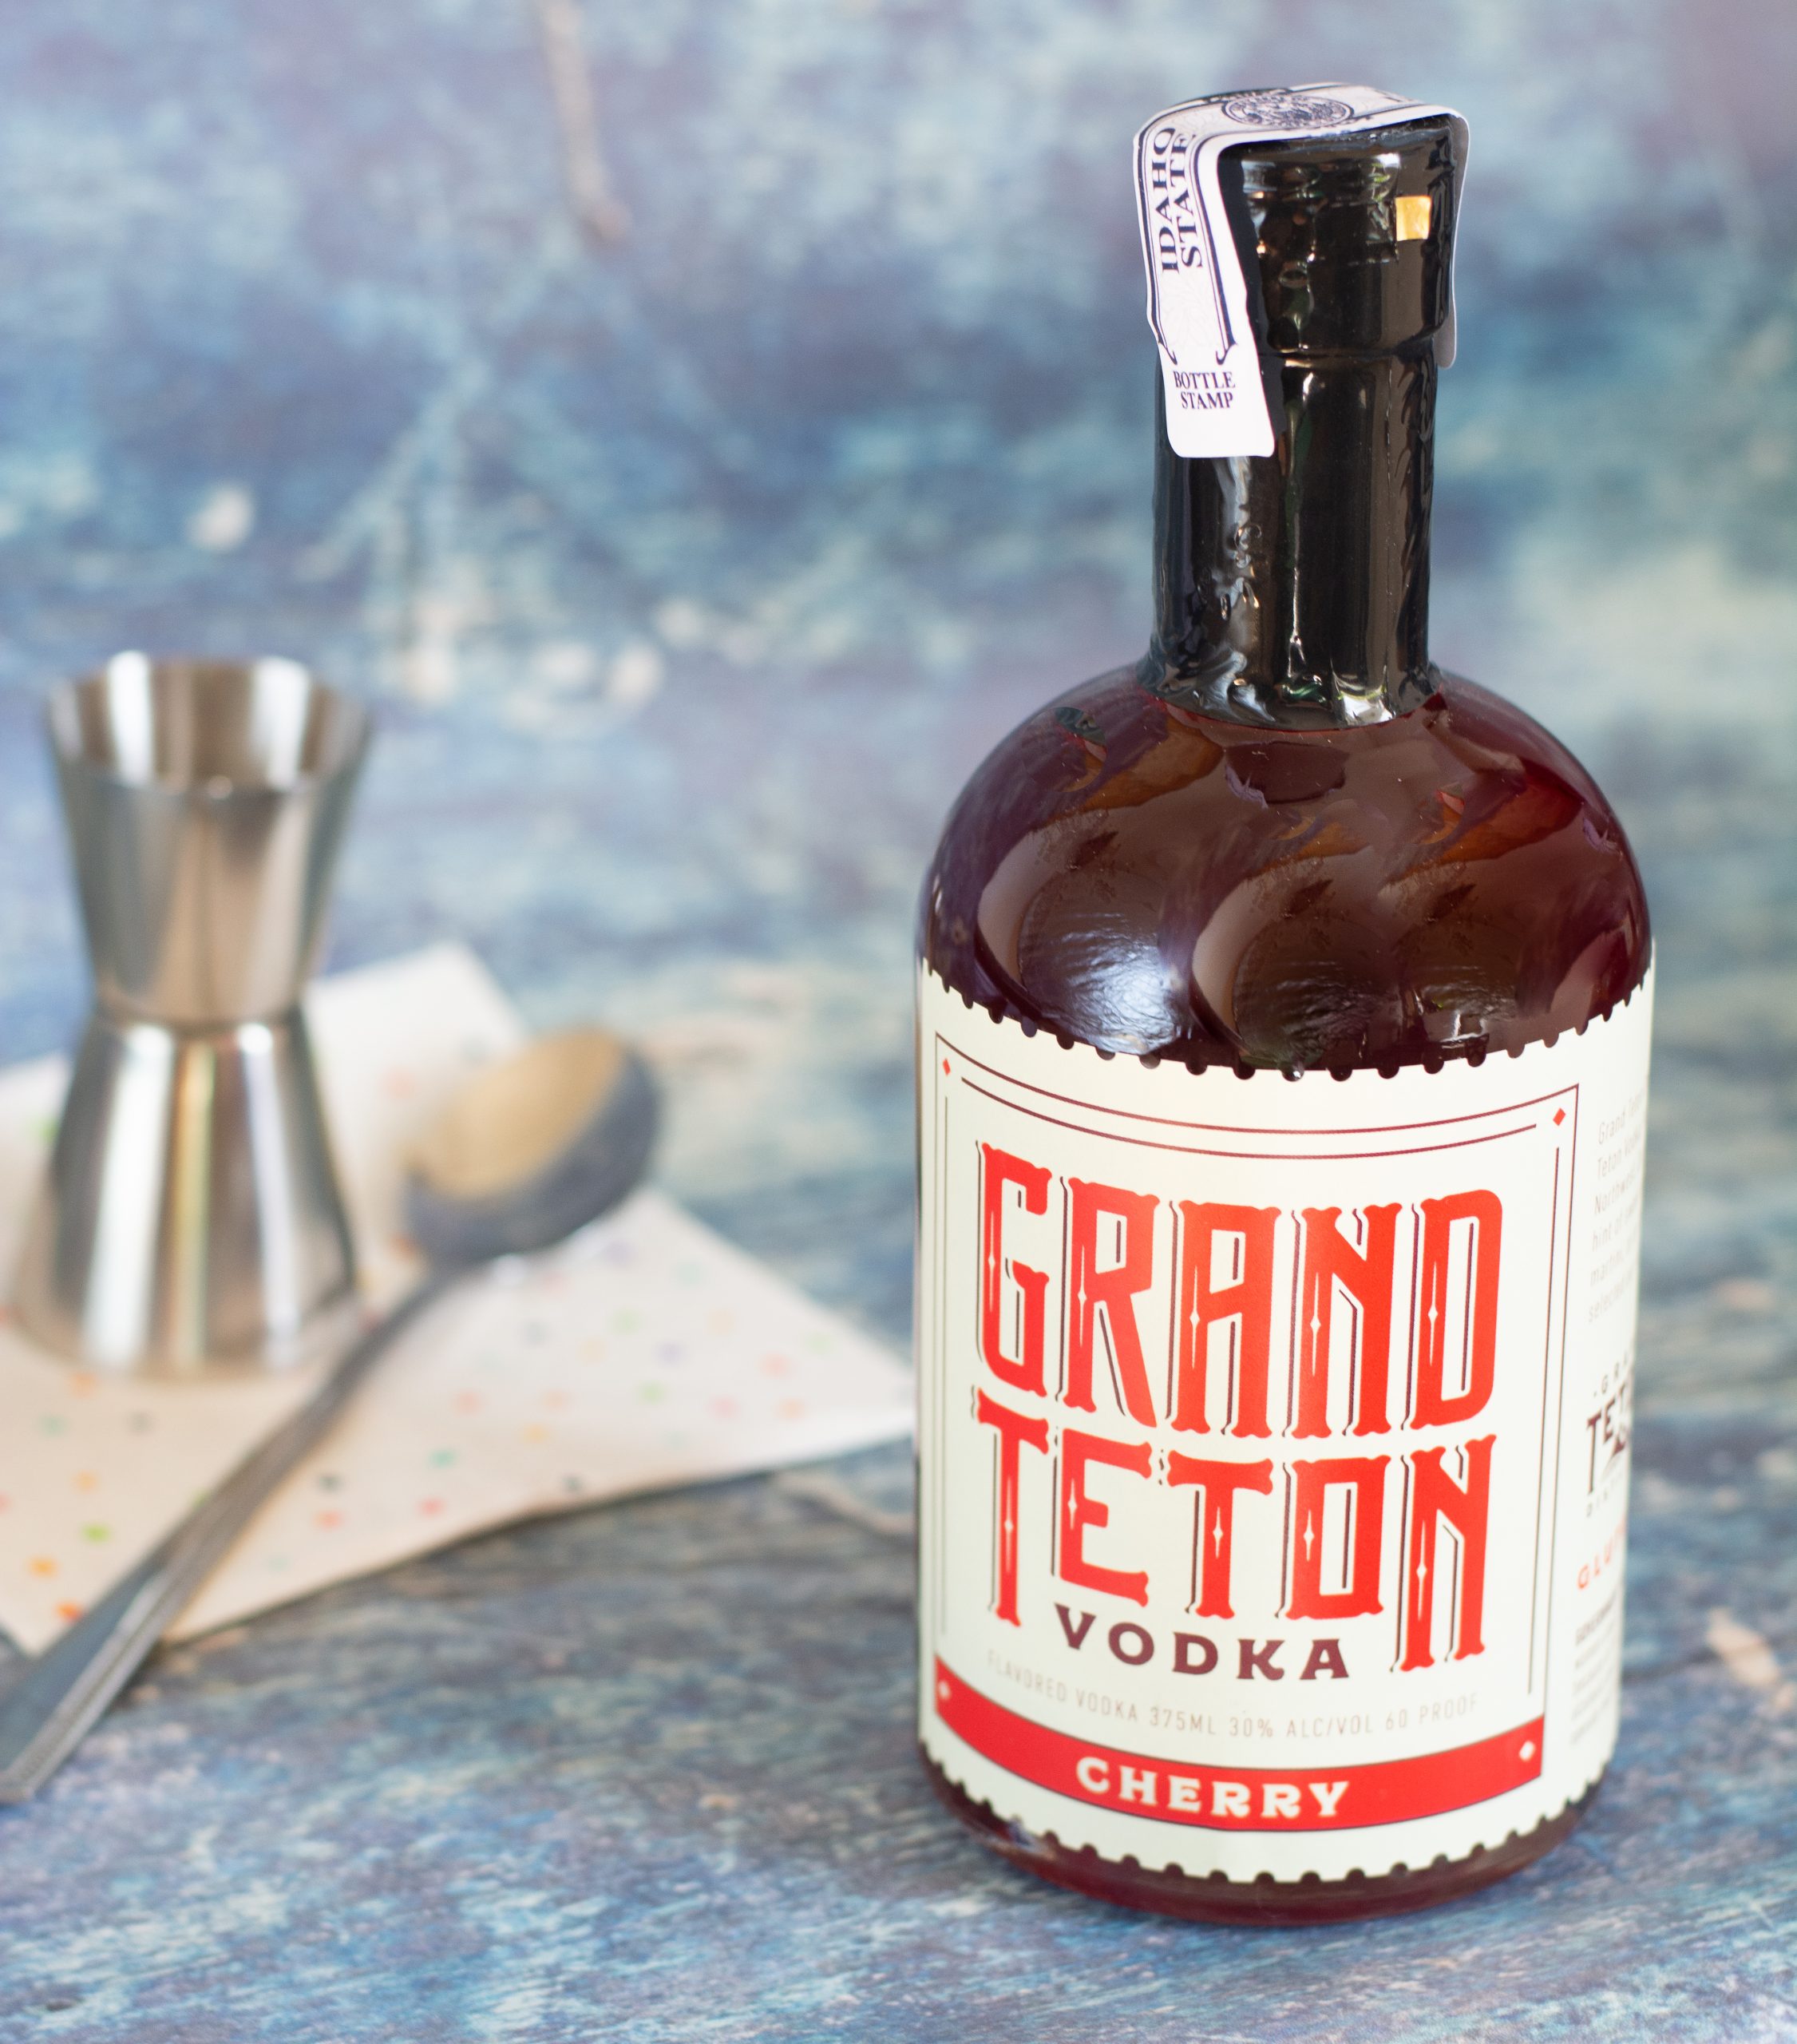 Grand Teton Cherry Vodka